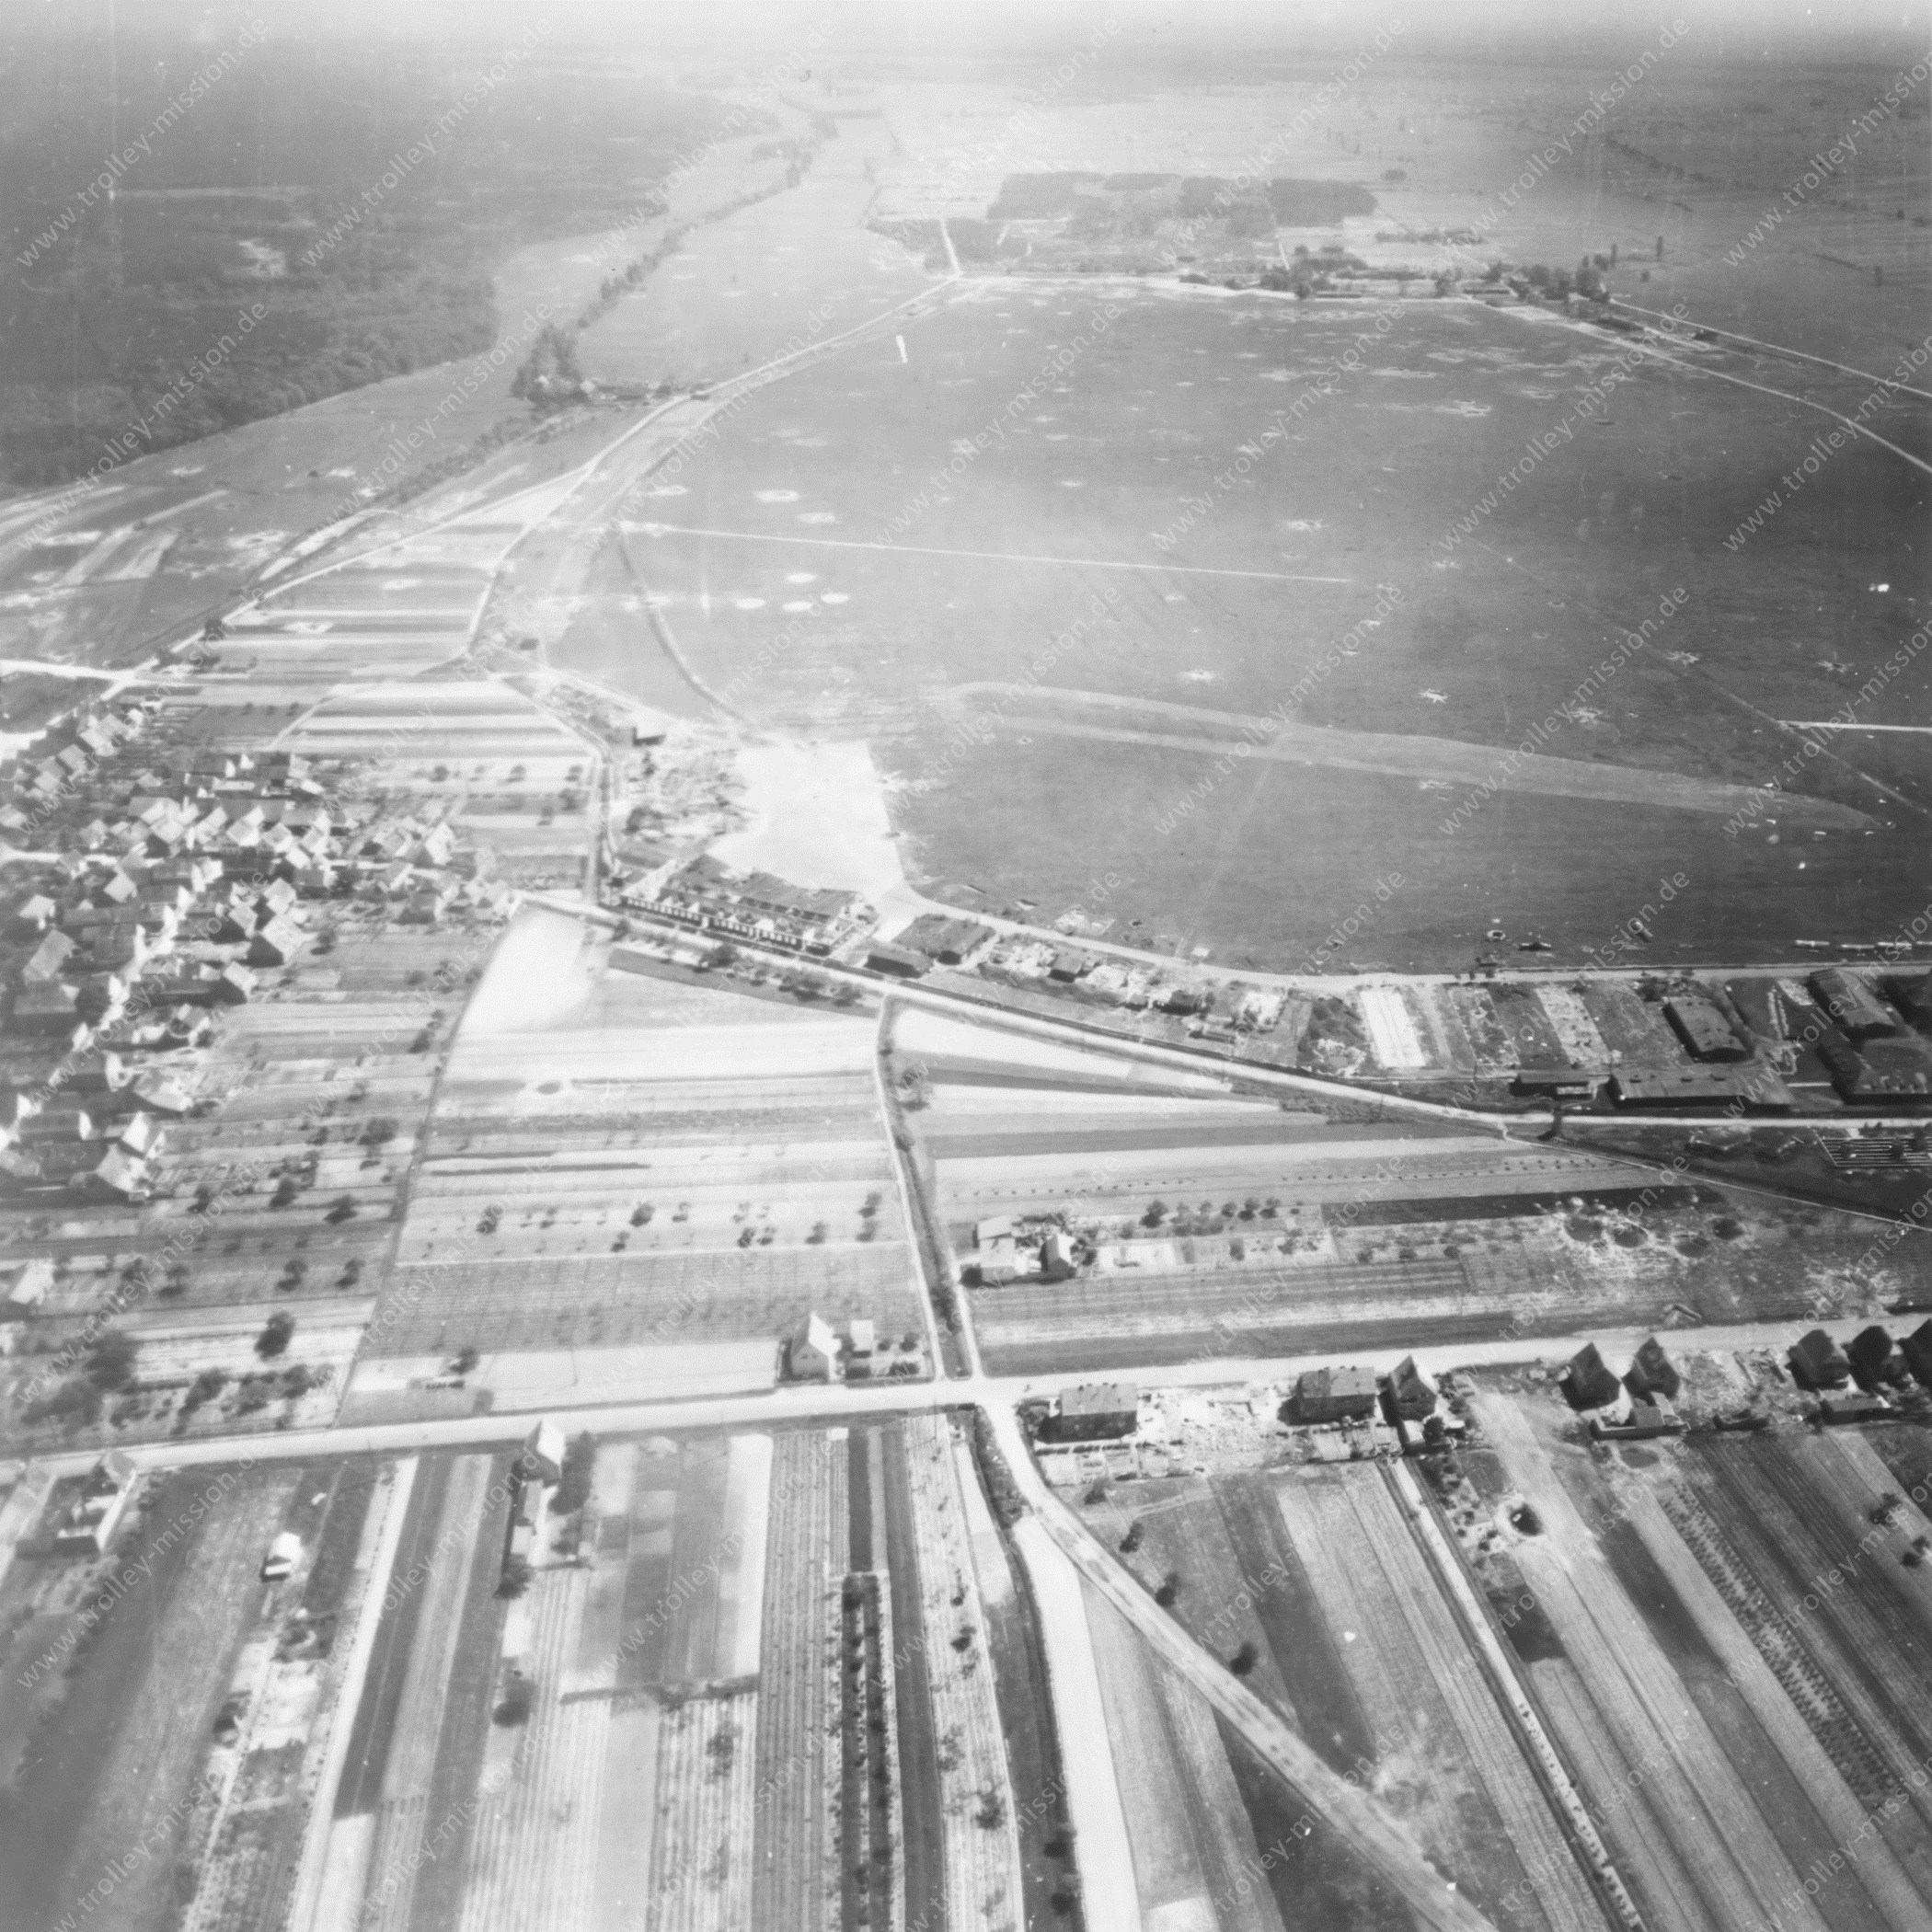 Luftaufnahme Flugplatz Lachen-Speyerdorf nach dem Zweiten Weltkrieg